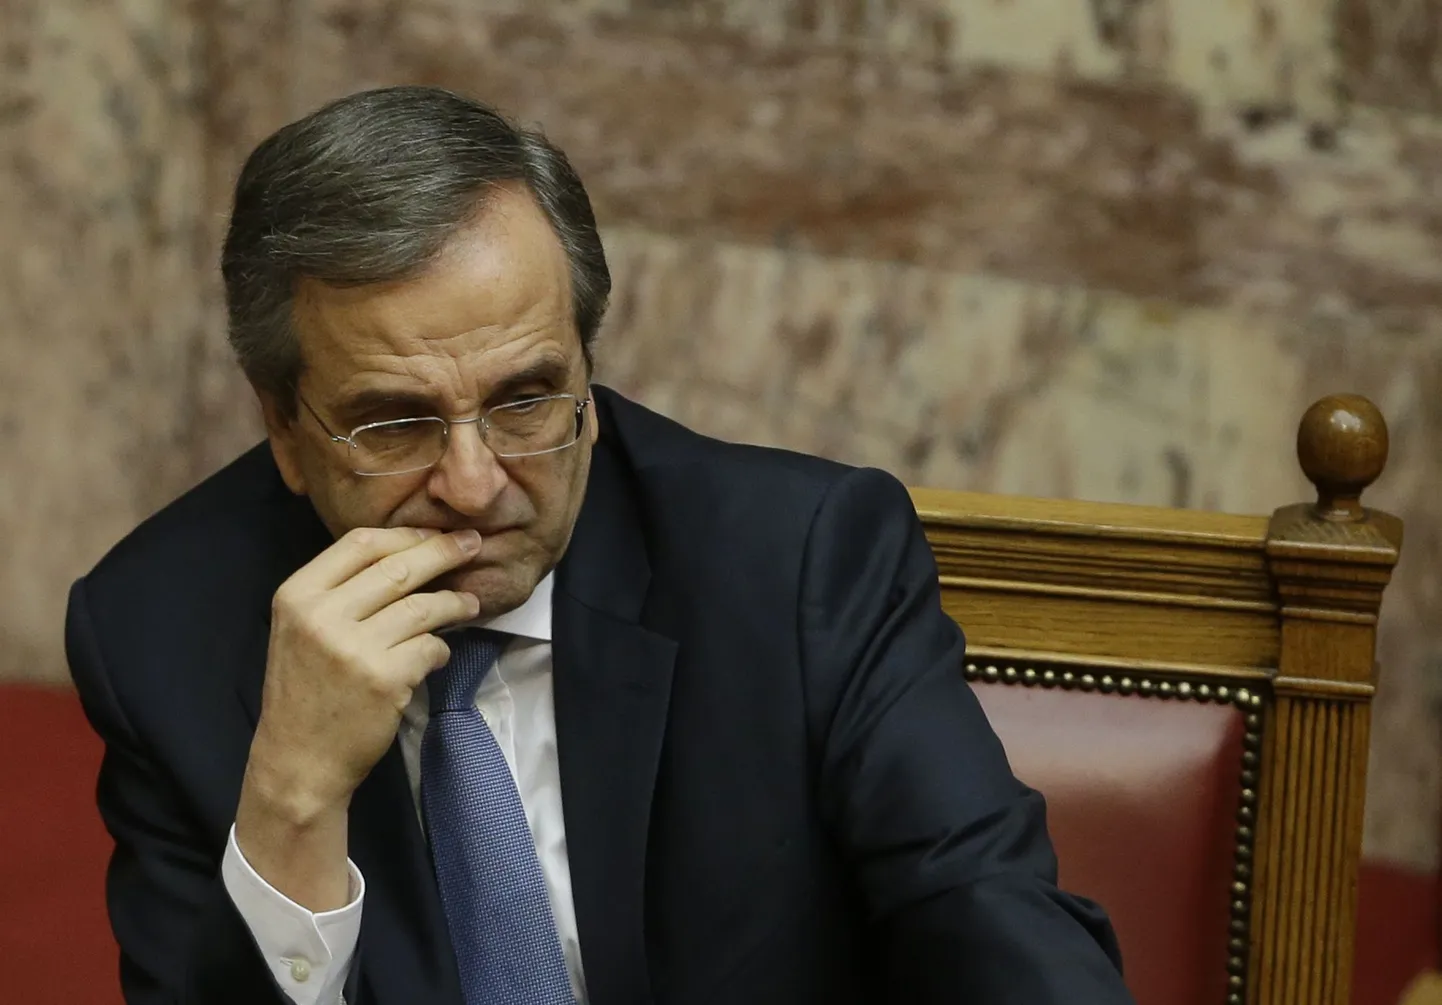 Kreeka peaminister Antonis Samaras presidendi valimise kolmandal läbikukkunud katsel.